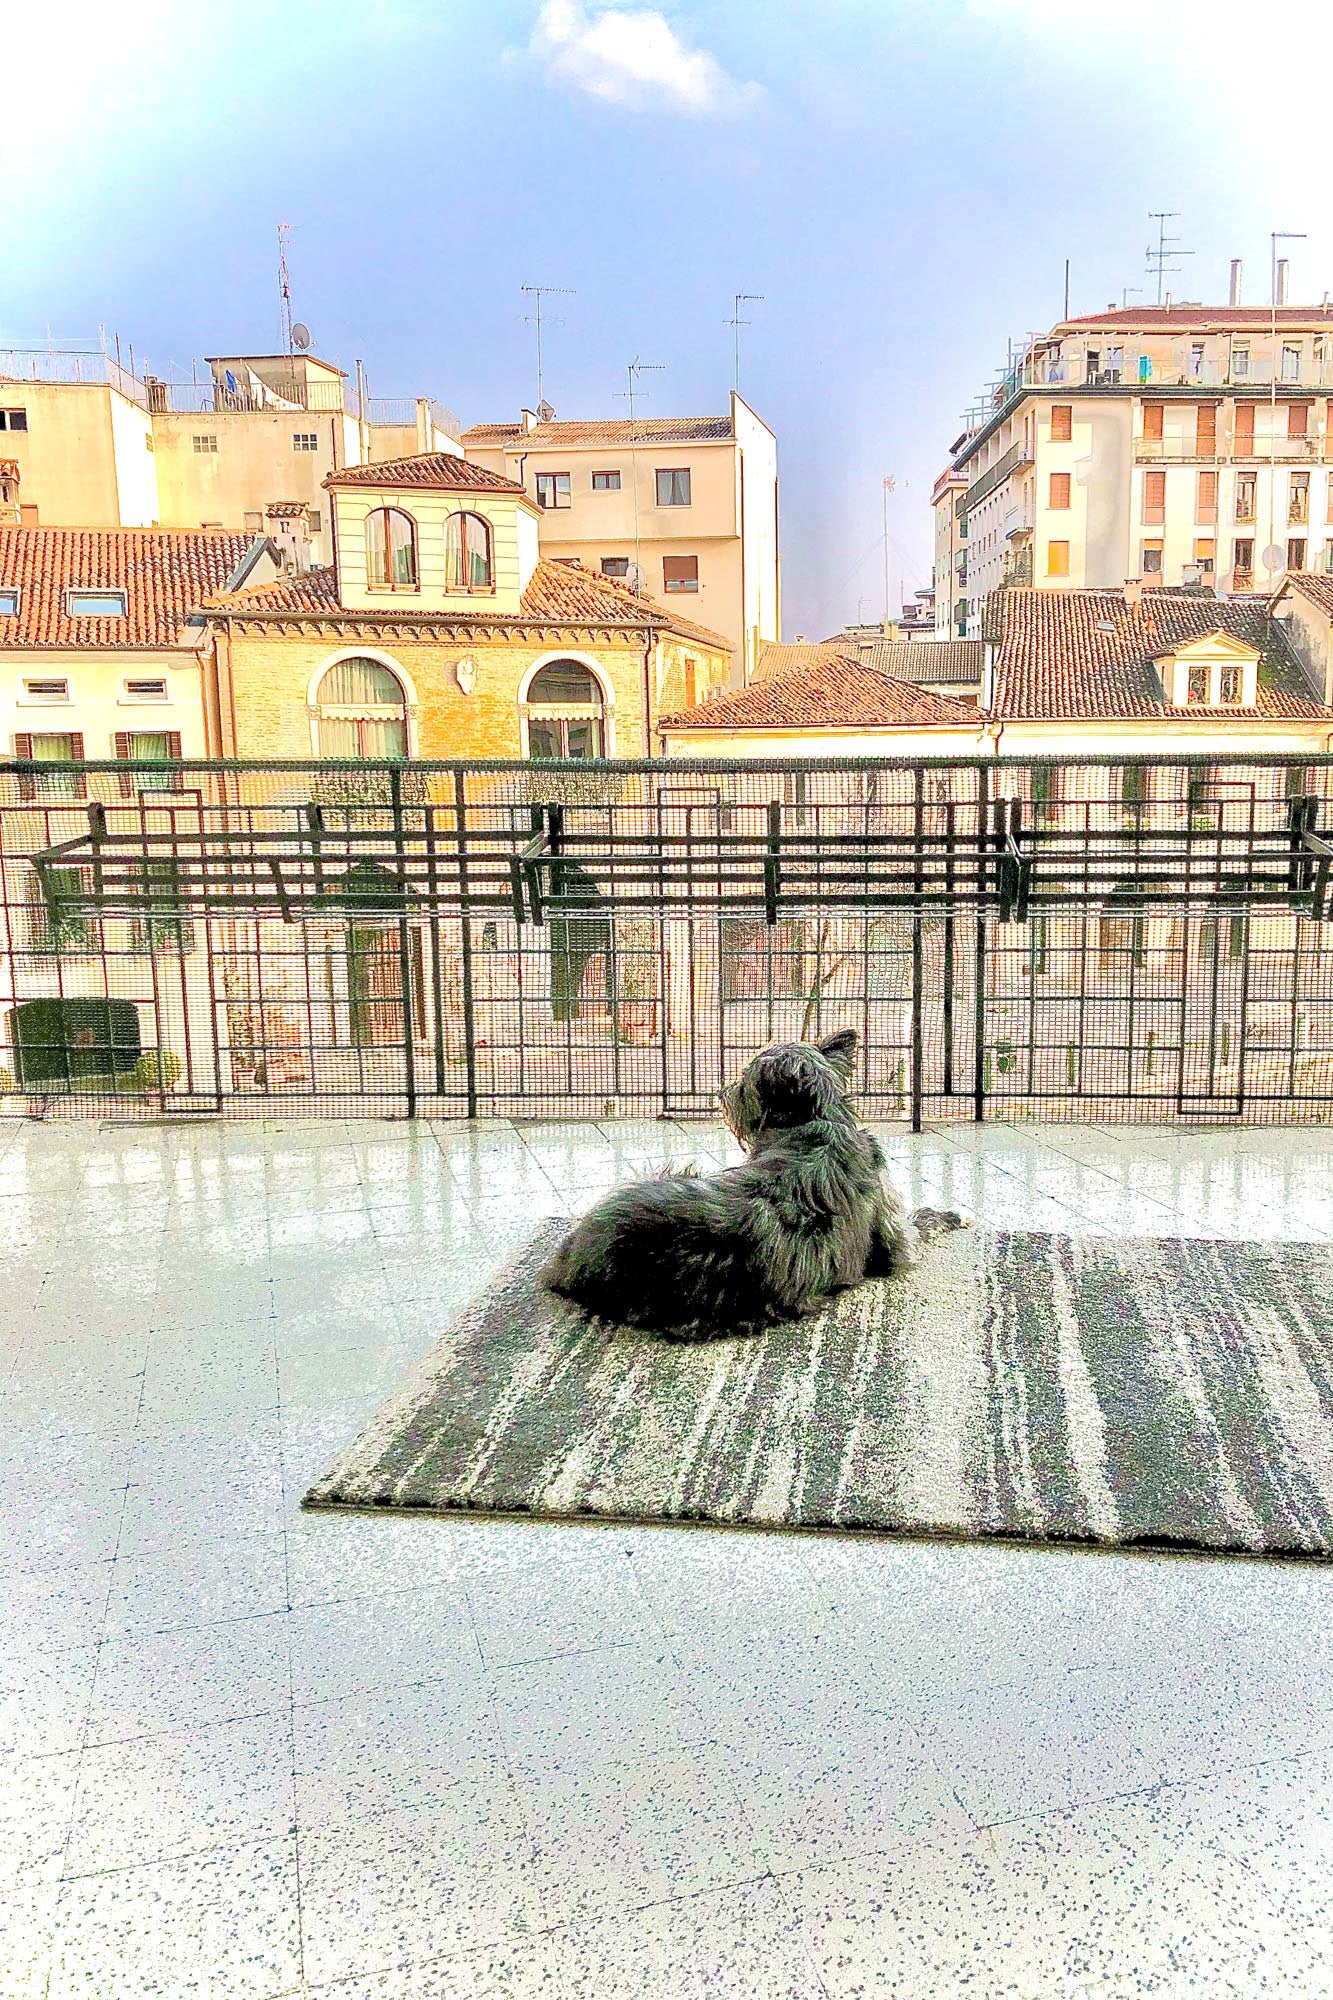 A dog on an terrace.